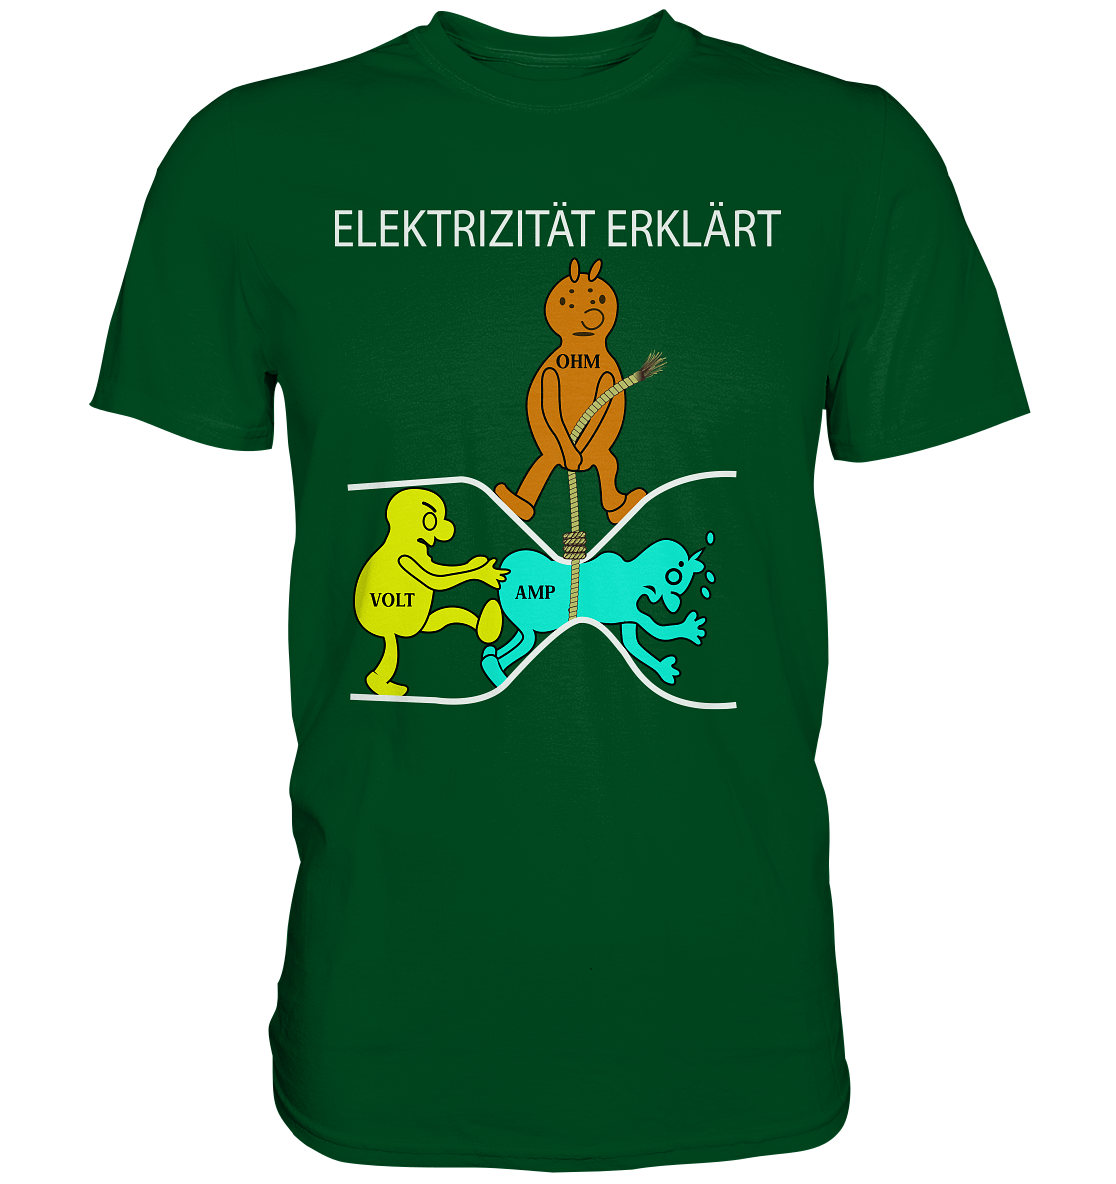 Elektrizität erklärt - Premium Shirt